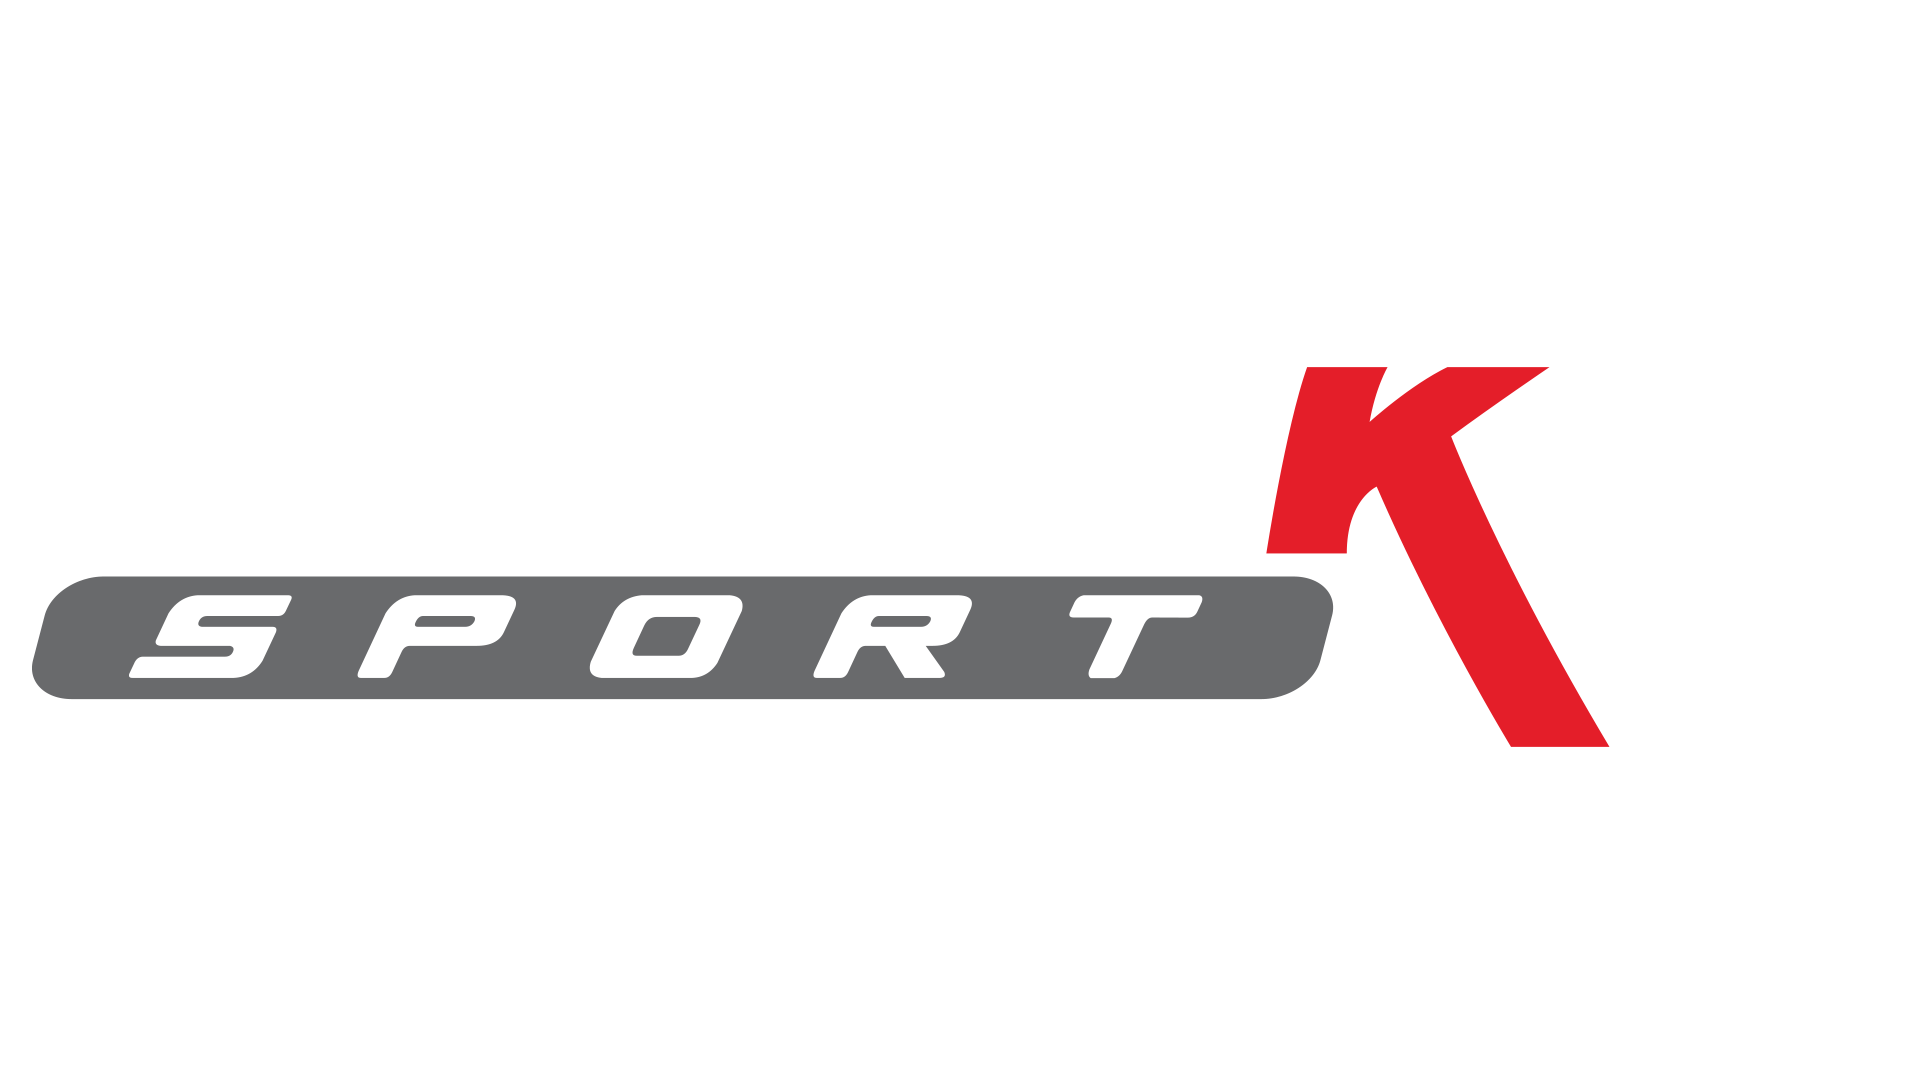 Milltek Sport Ltd.